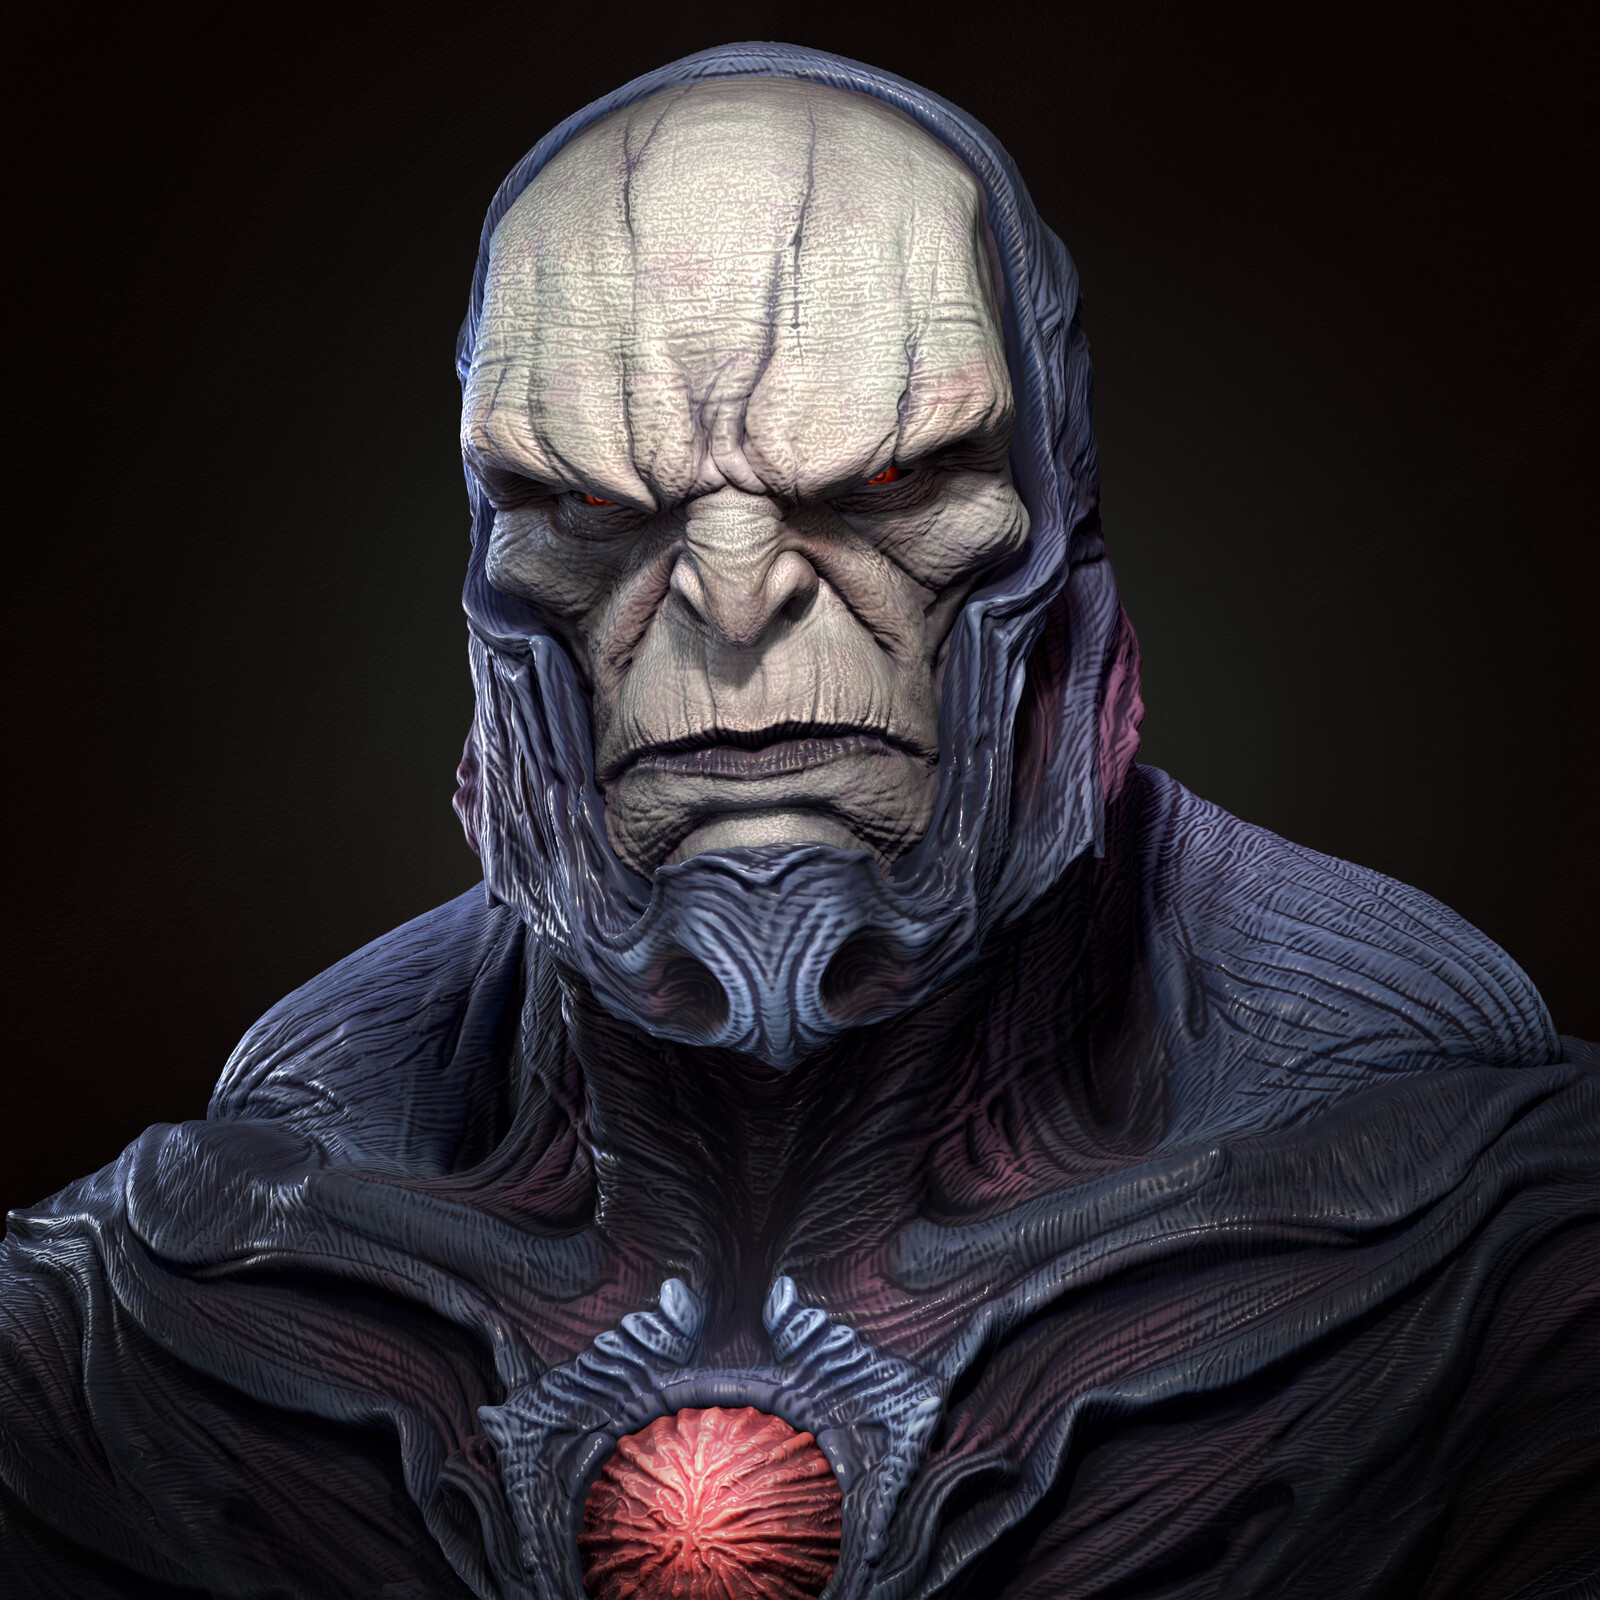 Darkseid bust (fan art)